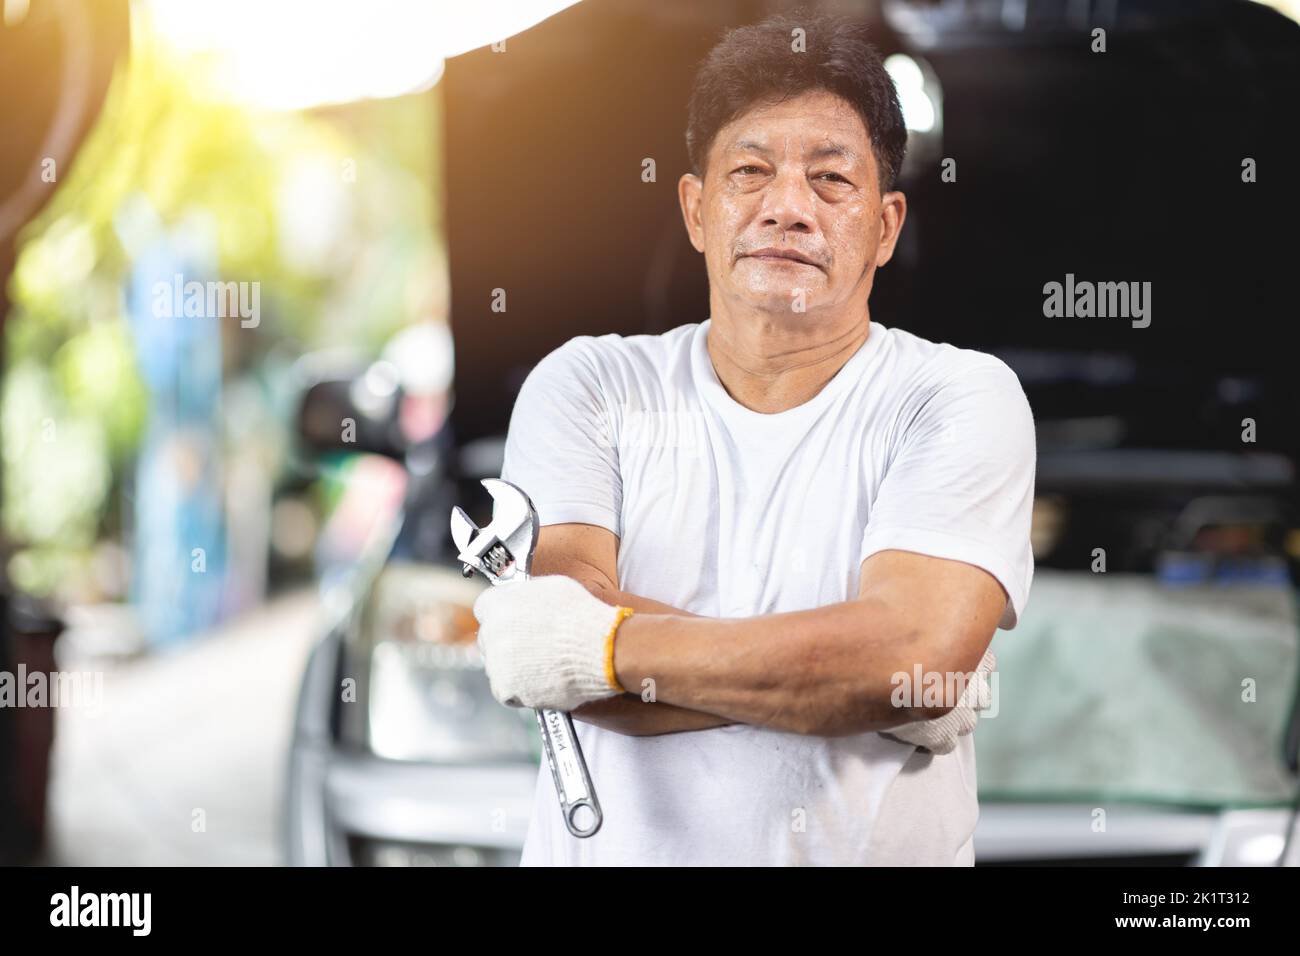 Hombre asiático mecánico profesional retrato feliz sonrisa trabajo hombre en garaje auto servicio Foto de stock